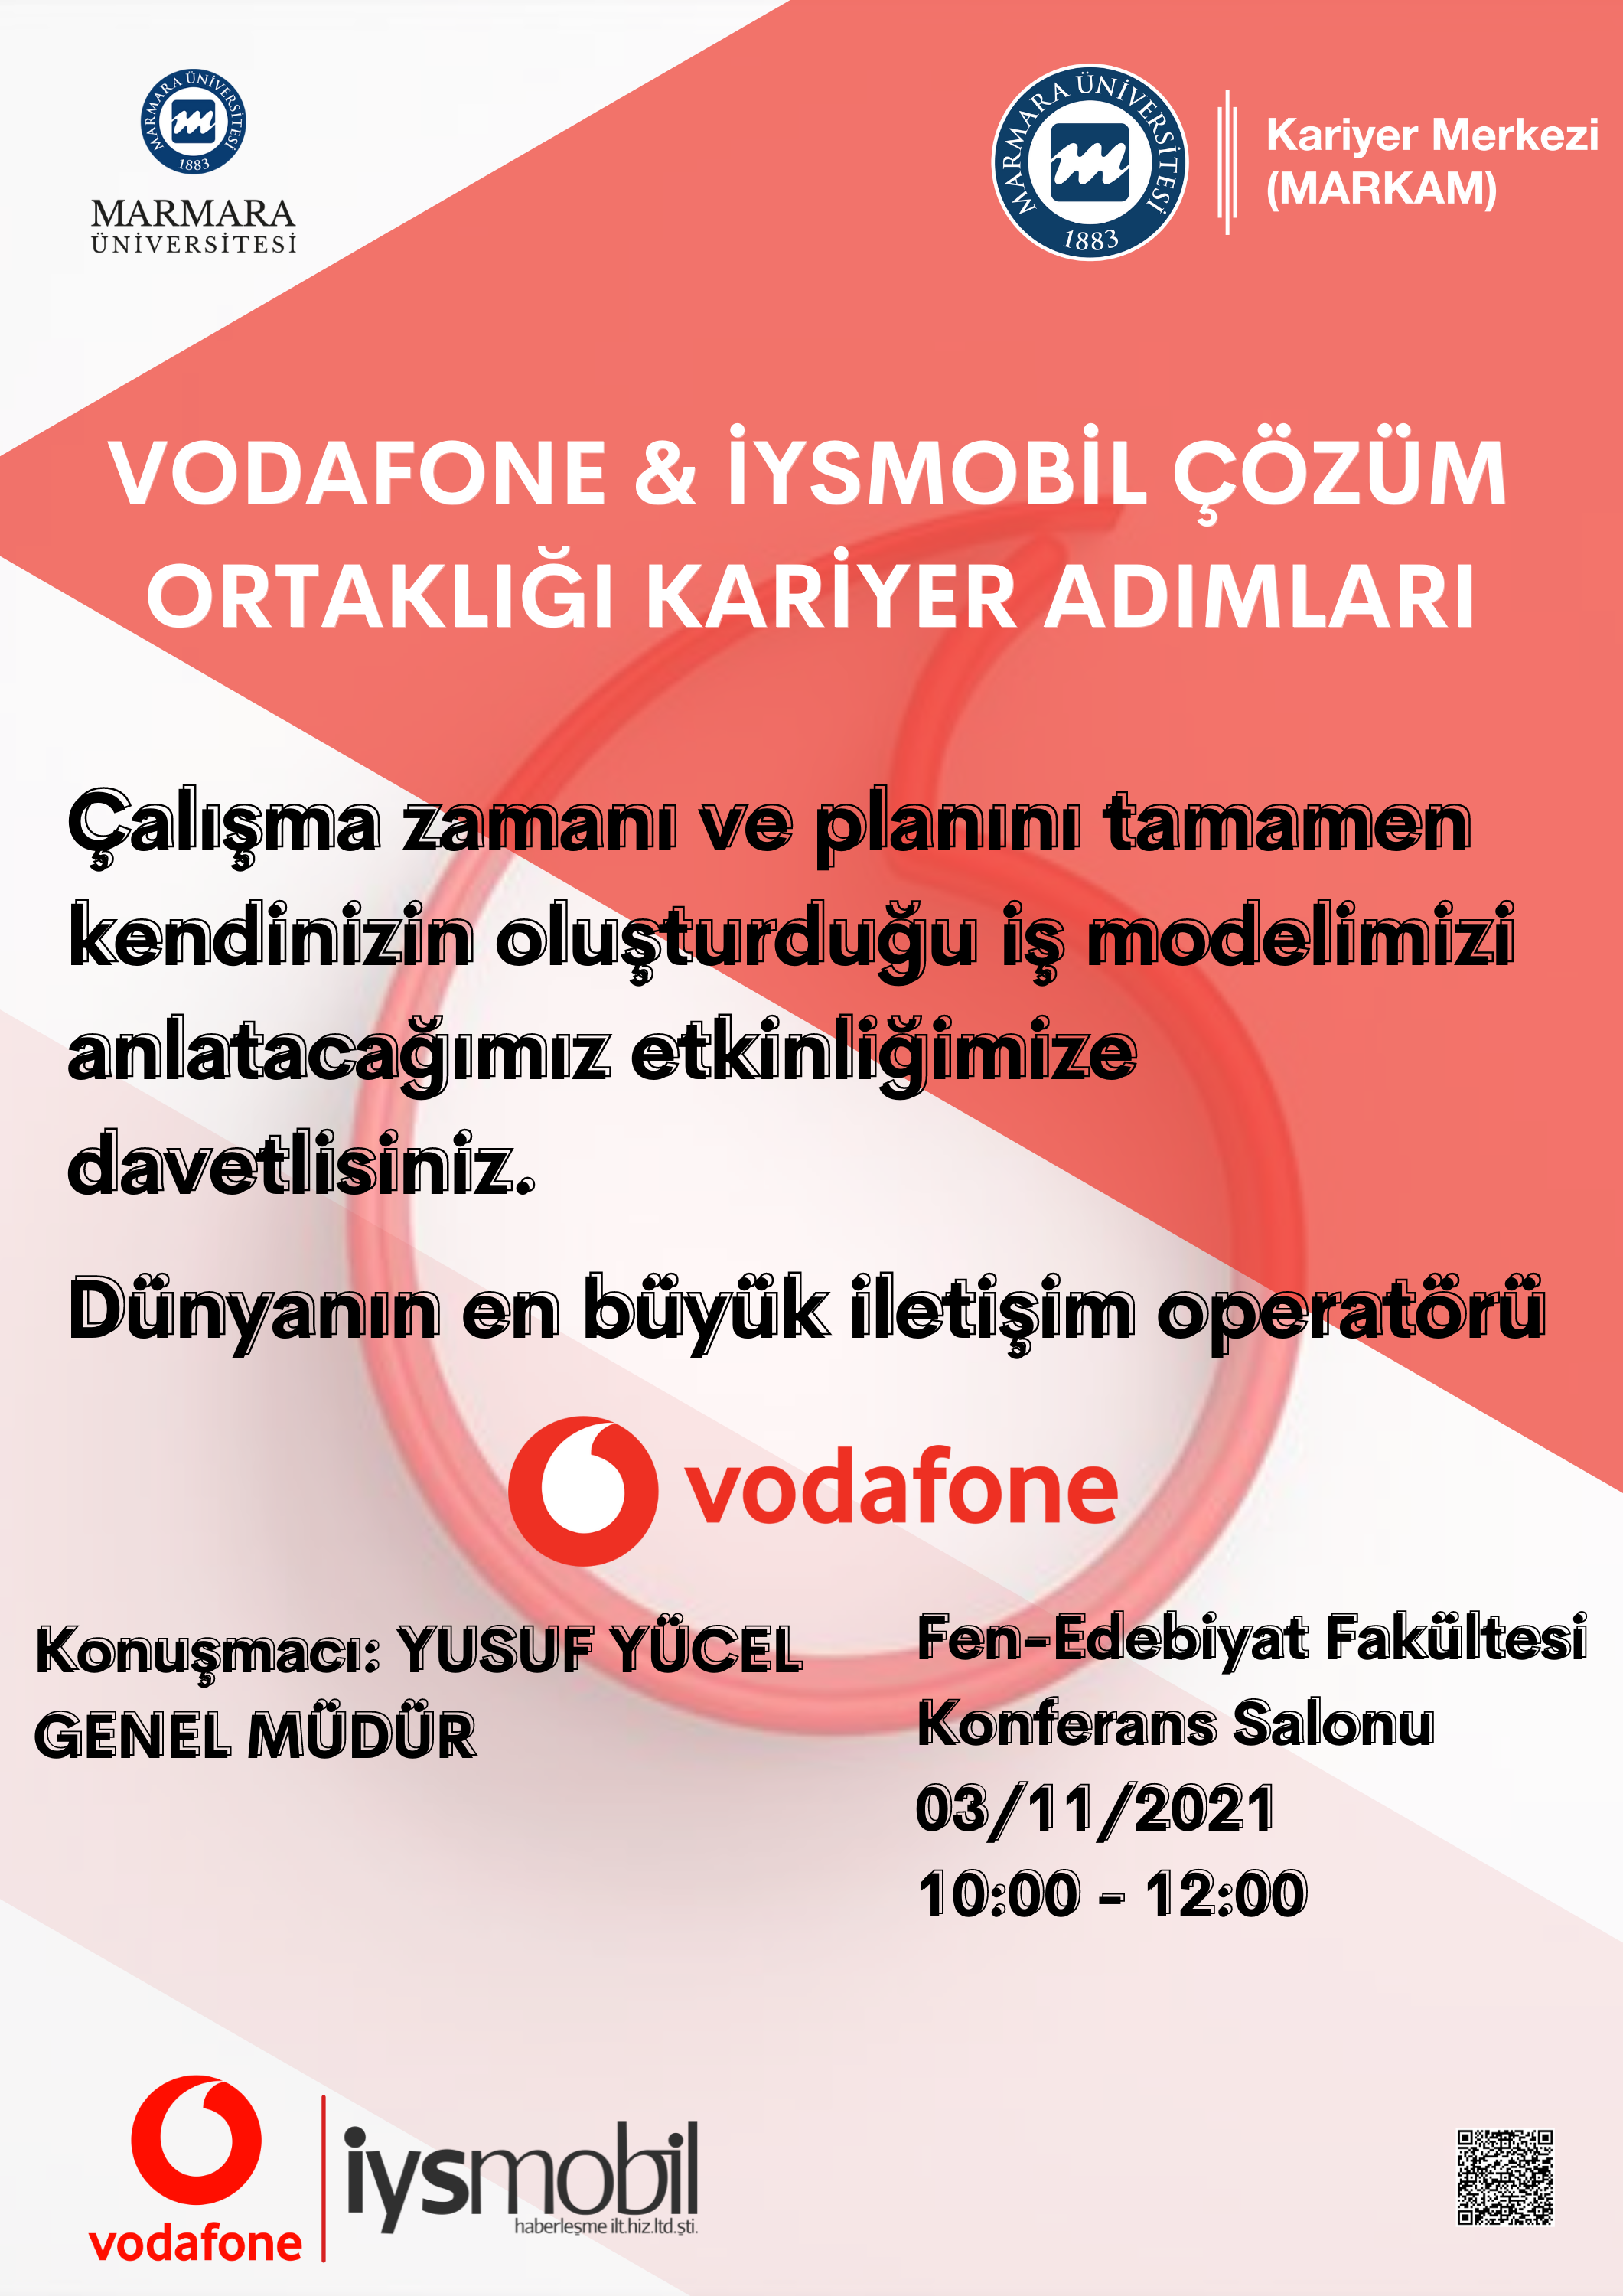 VODAFONE&İYSMOBİL Çözüm Ortaklığı - Kariyer Adımları - 31.10.2021.PNG (1.37 MB)